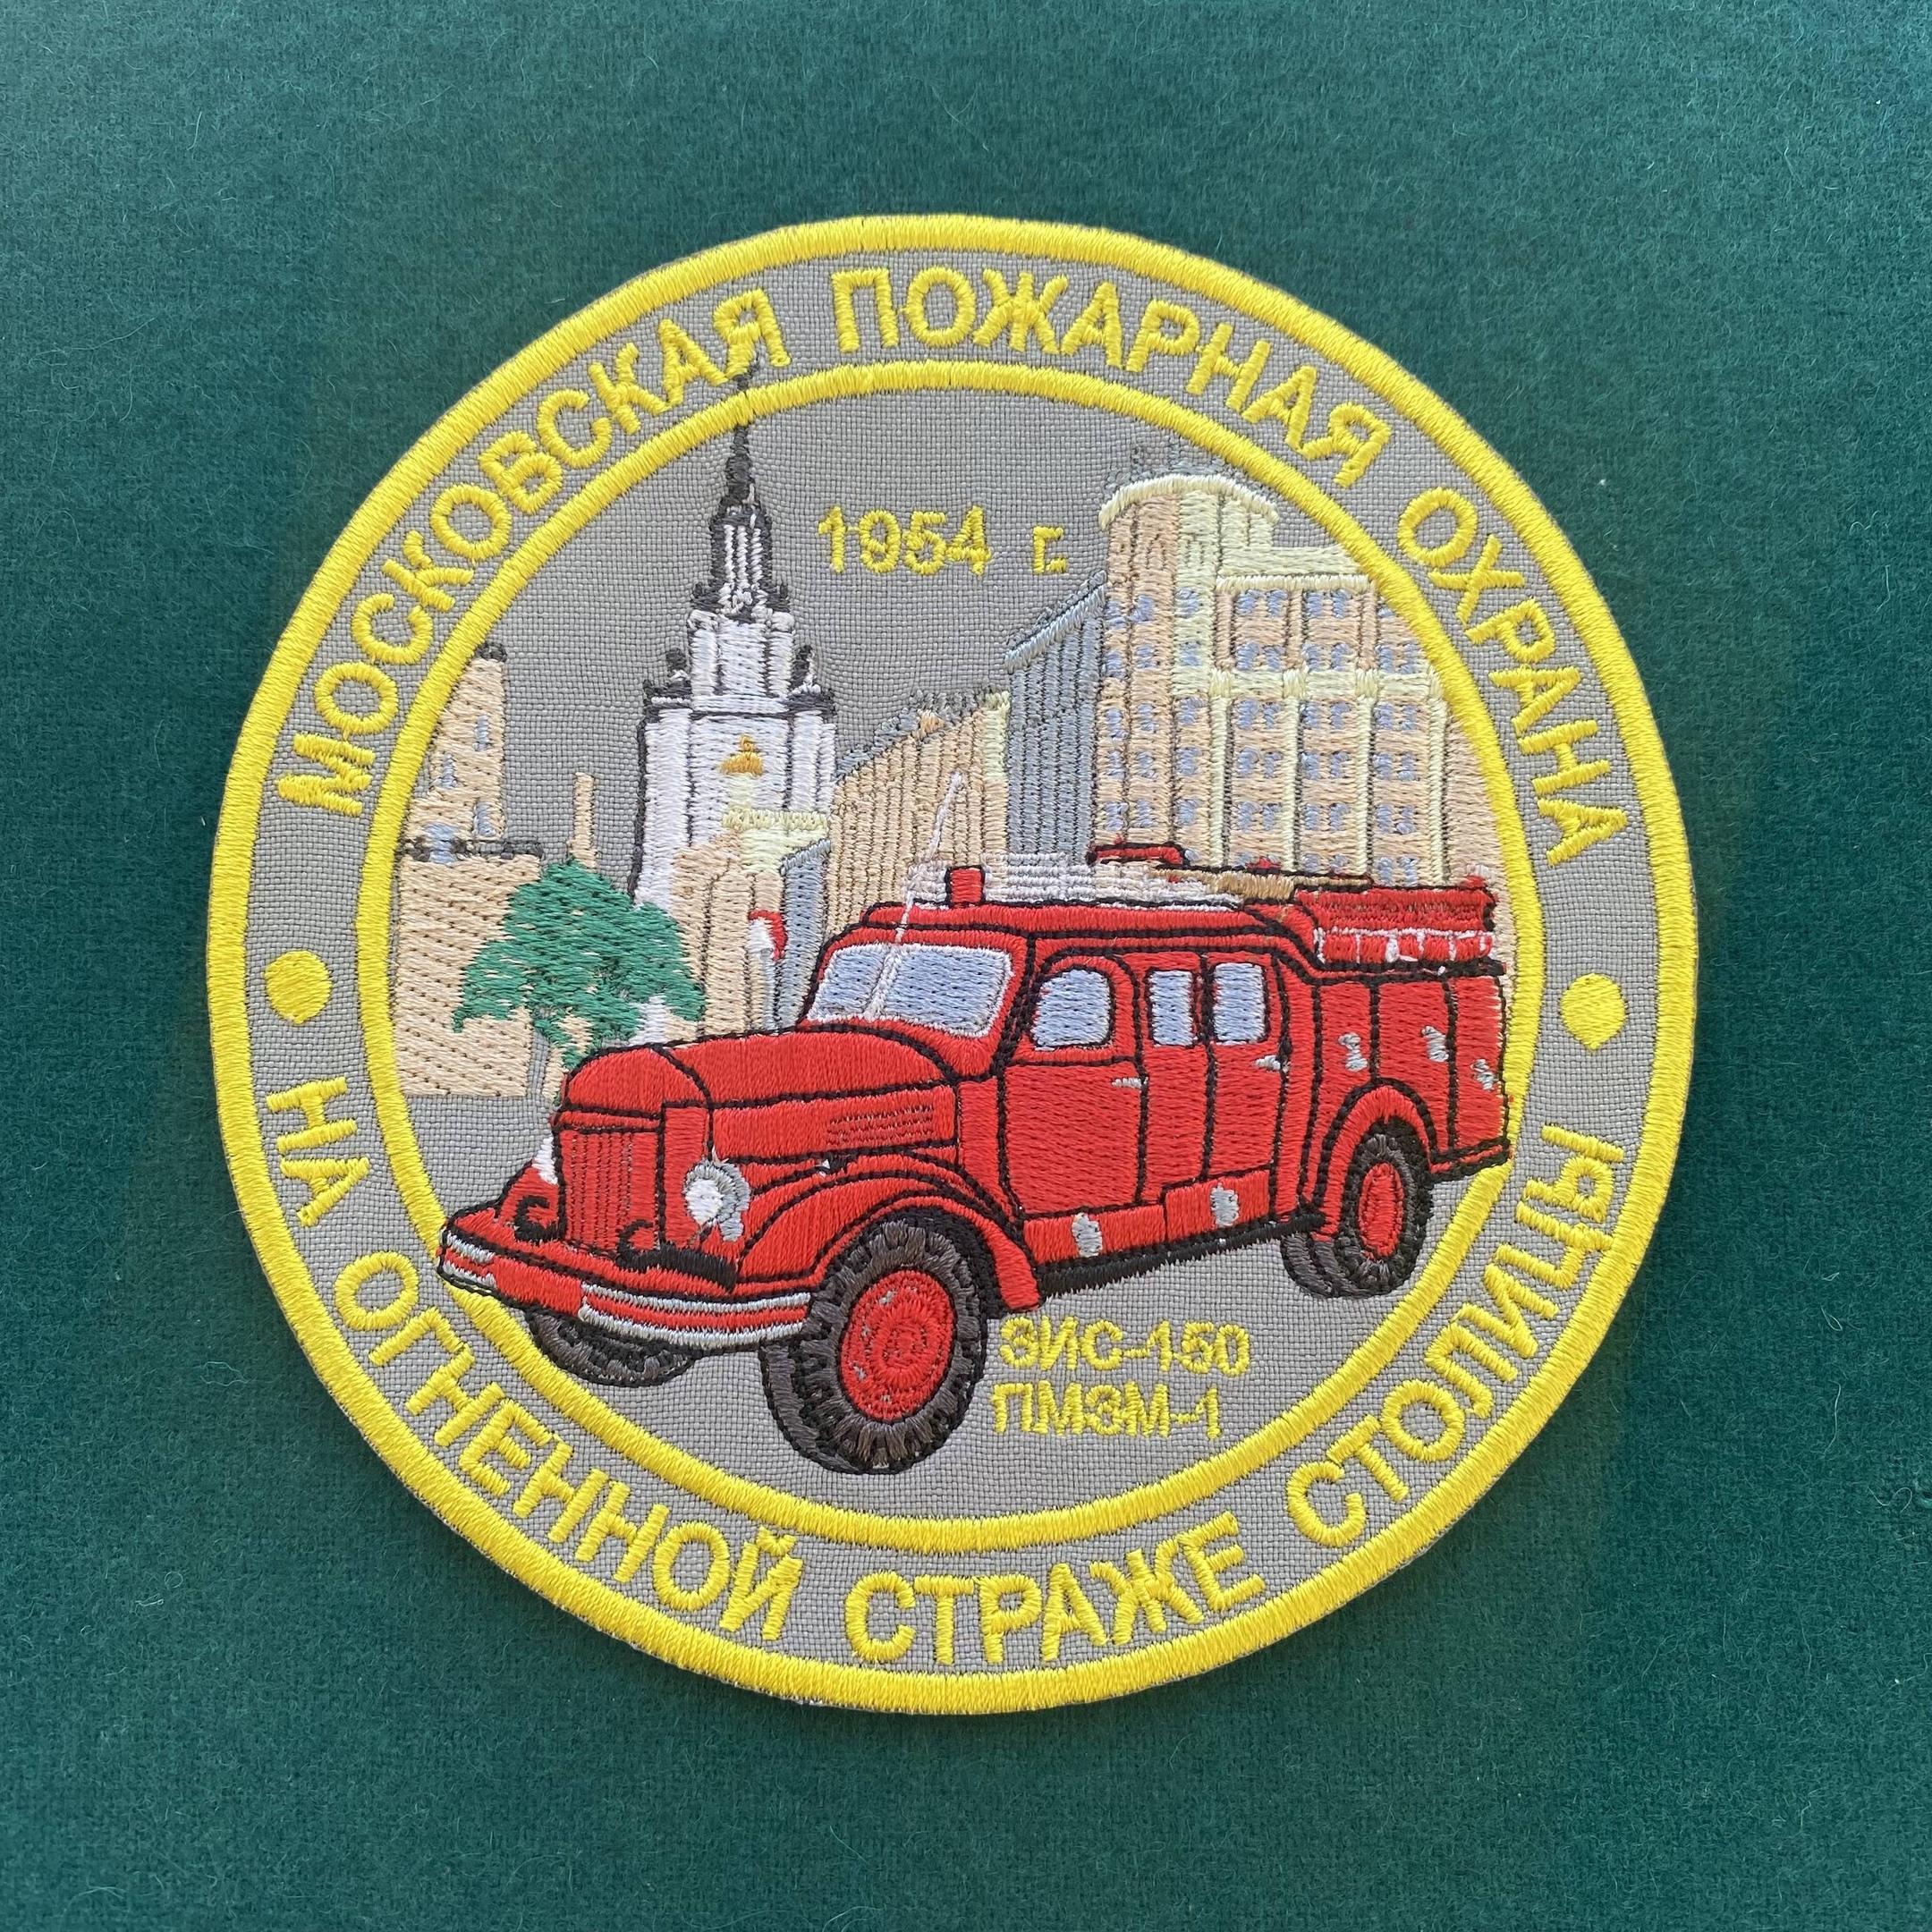 Коллекционный шеврон «Московская пожарная охрана». На огненной страже столицы 1954